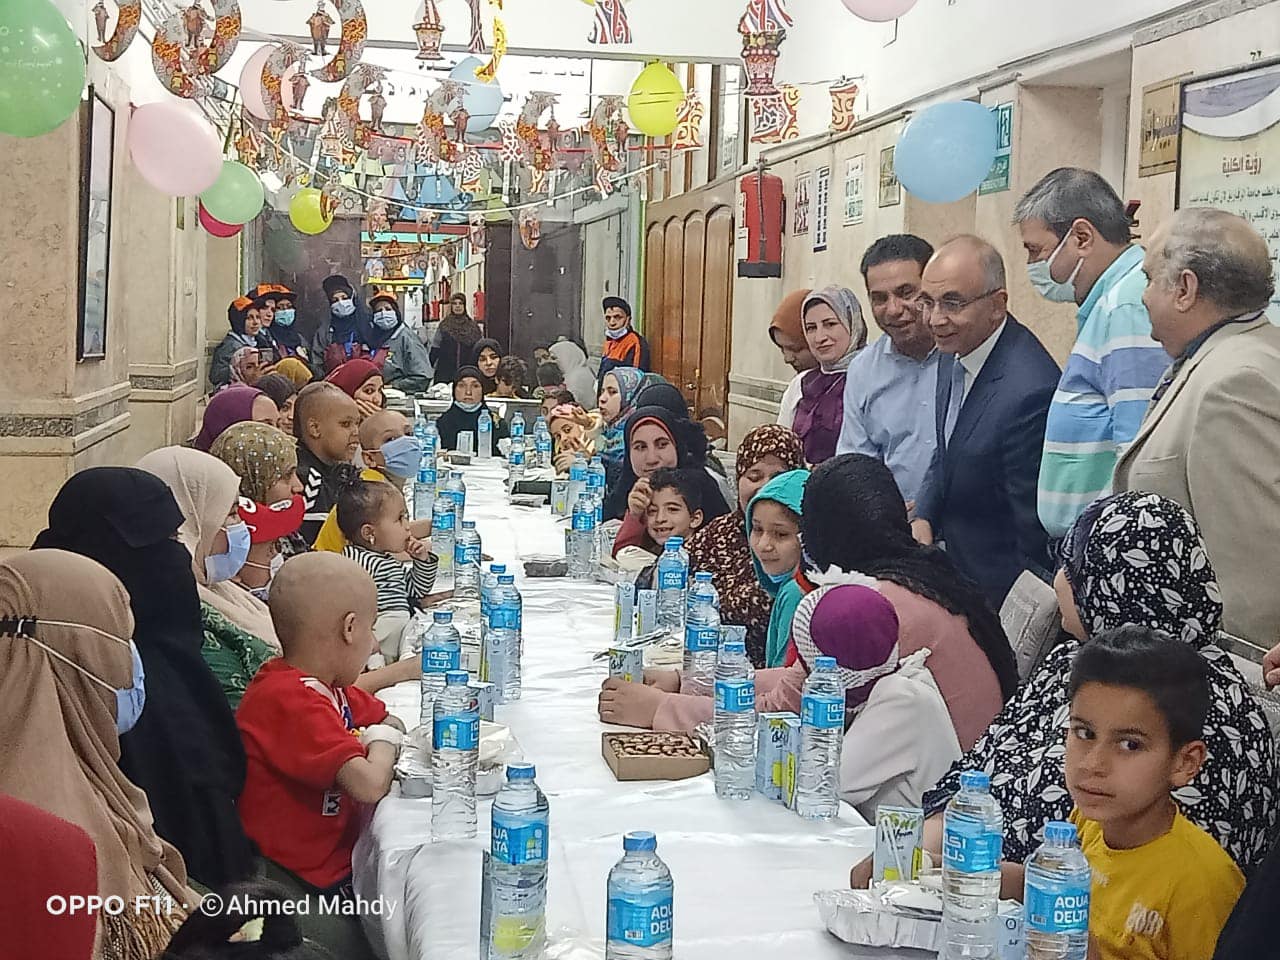 رئيس الجامعة يتناول إفطار رمضان مع أطفال مرضى الدم والأورام بكلية الطب البشري